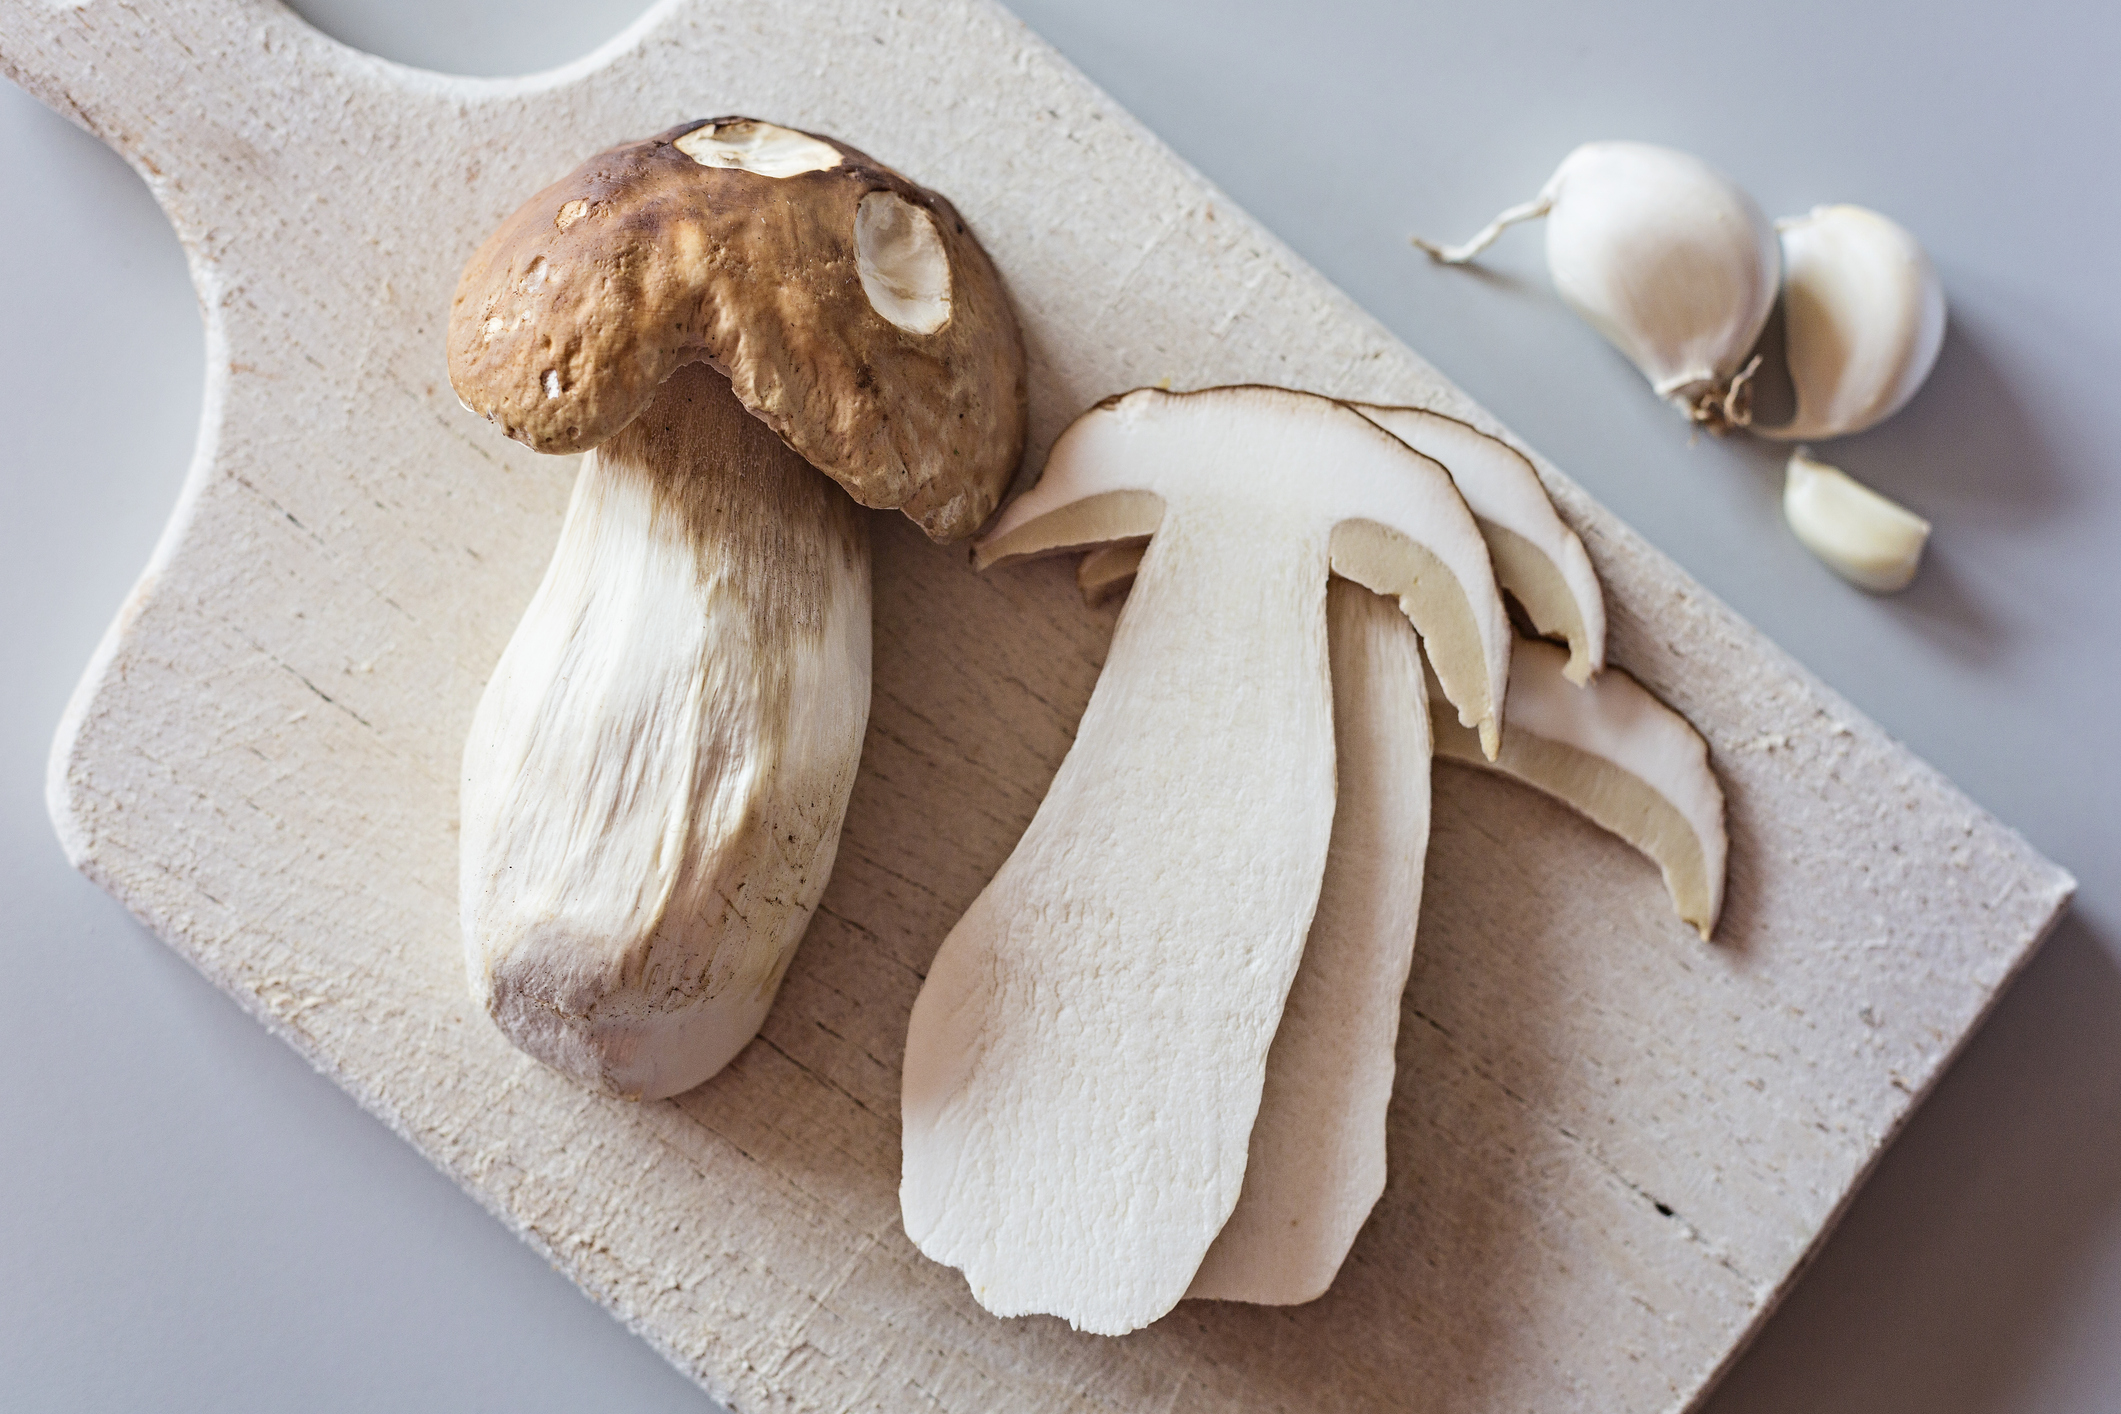 porcini mushrooms